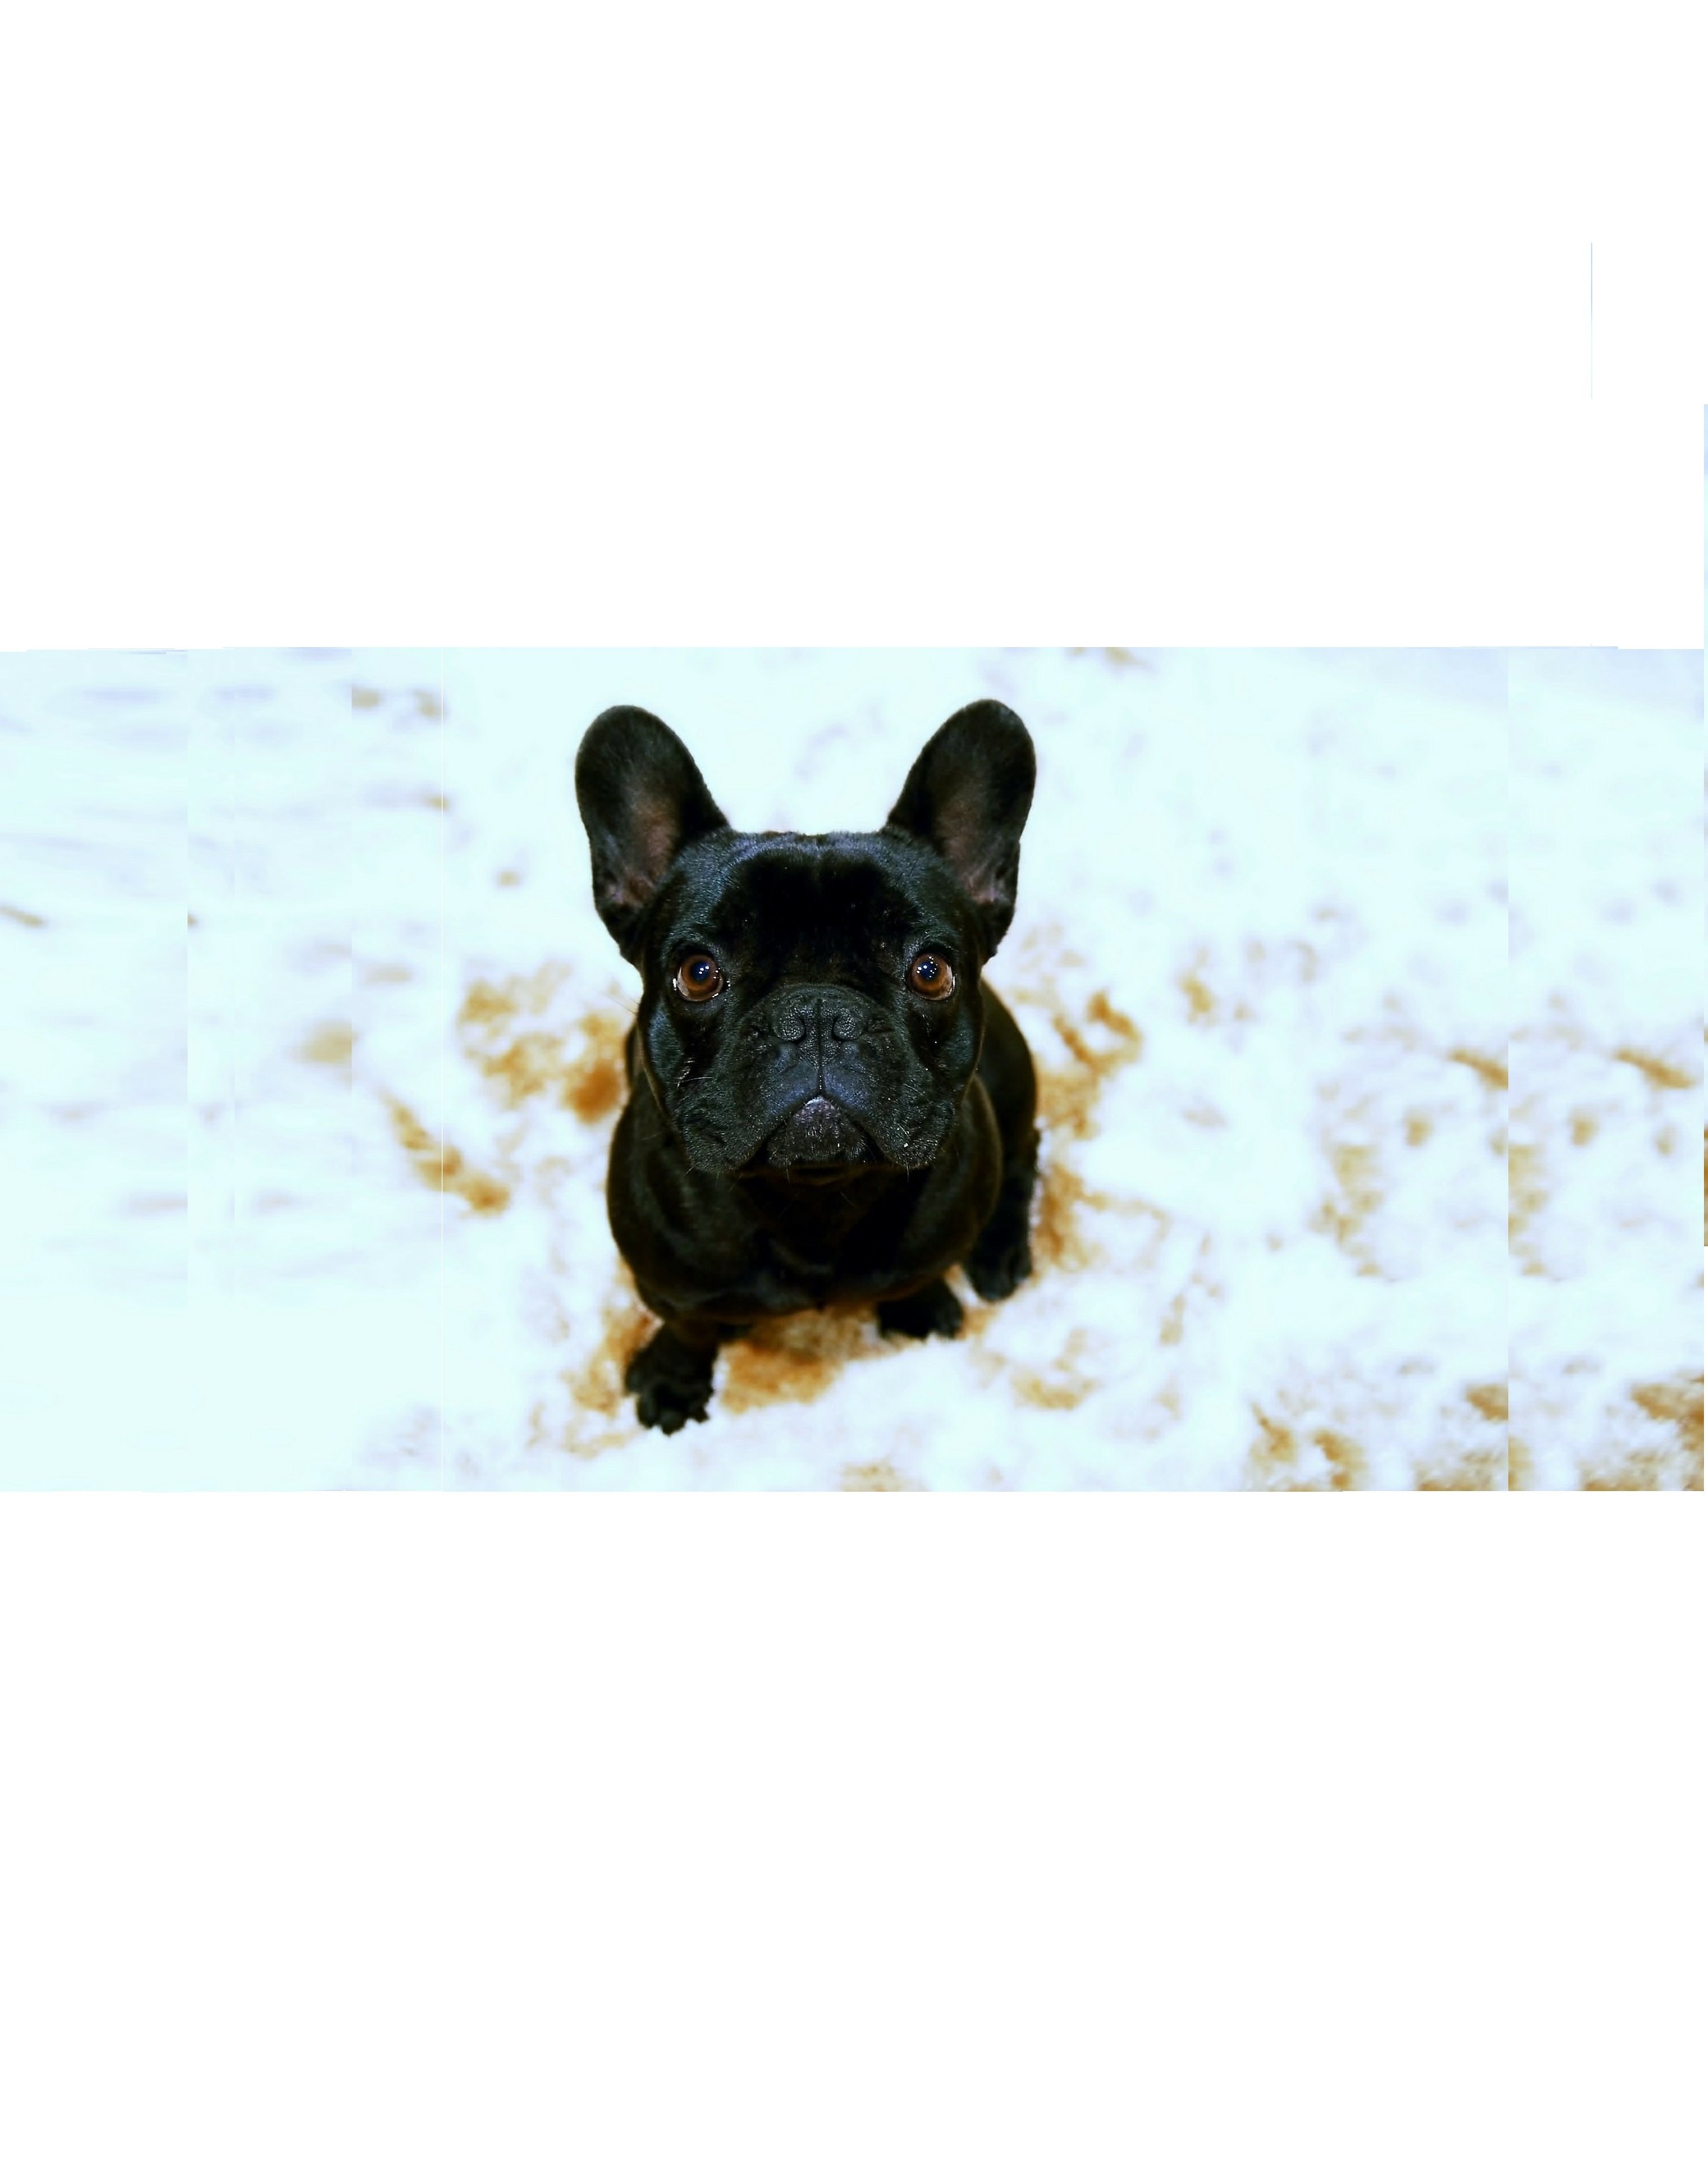 Francouzský buldoček (French Bulldog) - charakteristika, péče, zdraví (Encyklopedie psů)